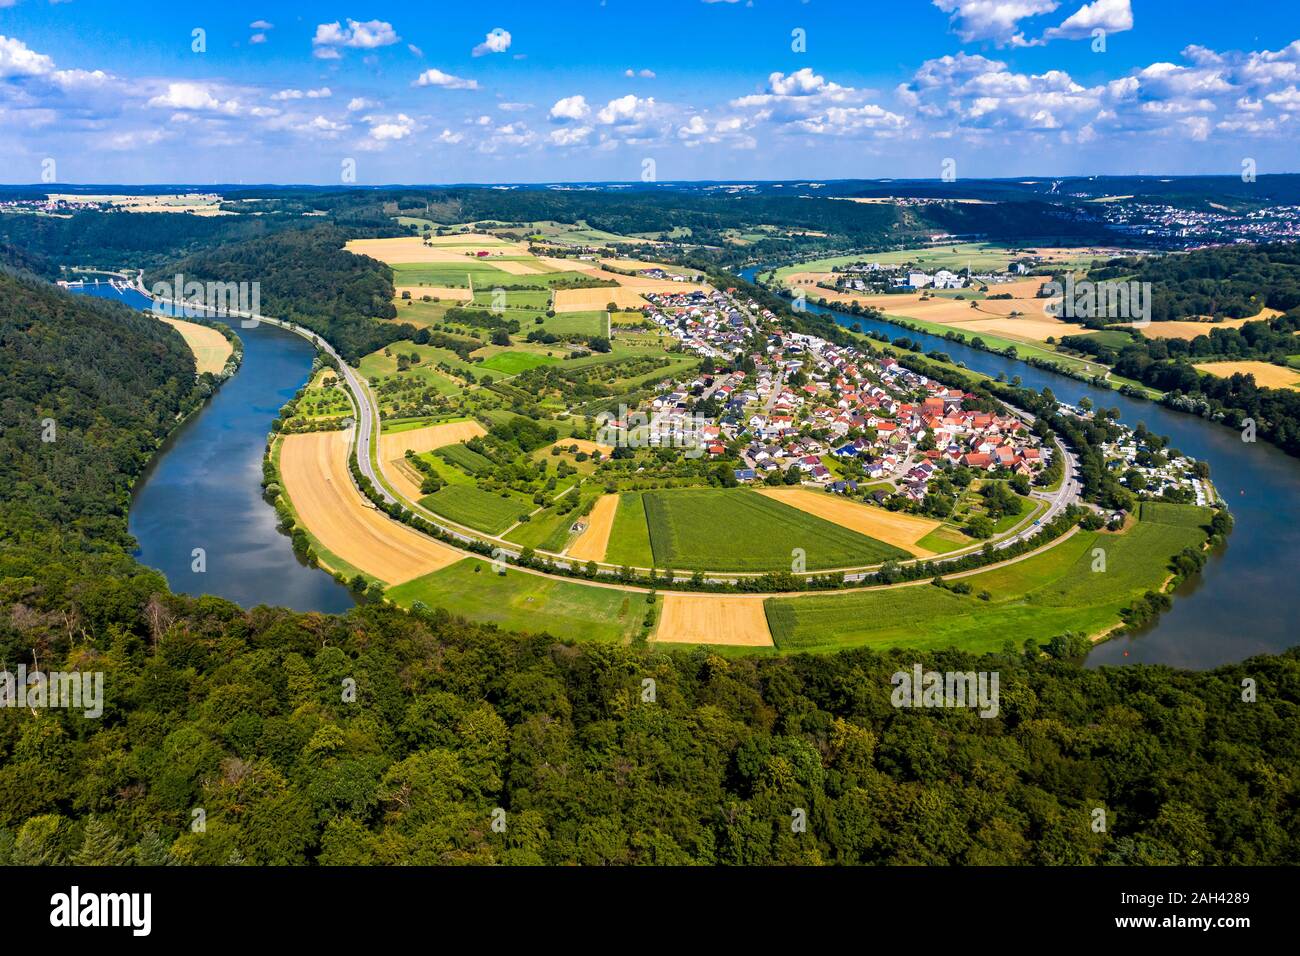 Alemania, Baviera, Binau, vista aérea del río curvándose alrededor del campo Ciudad Foto de stock